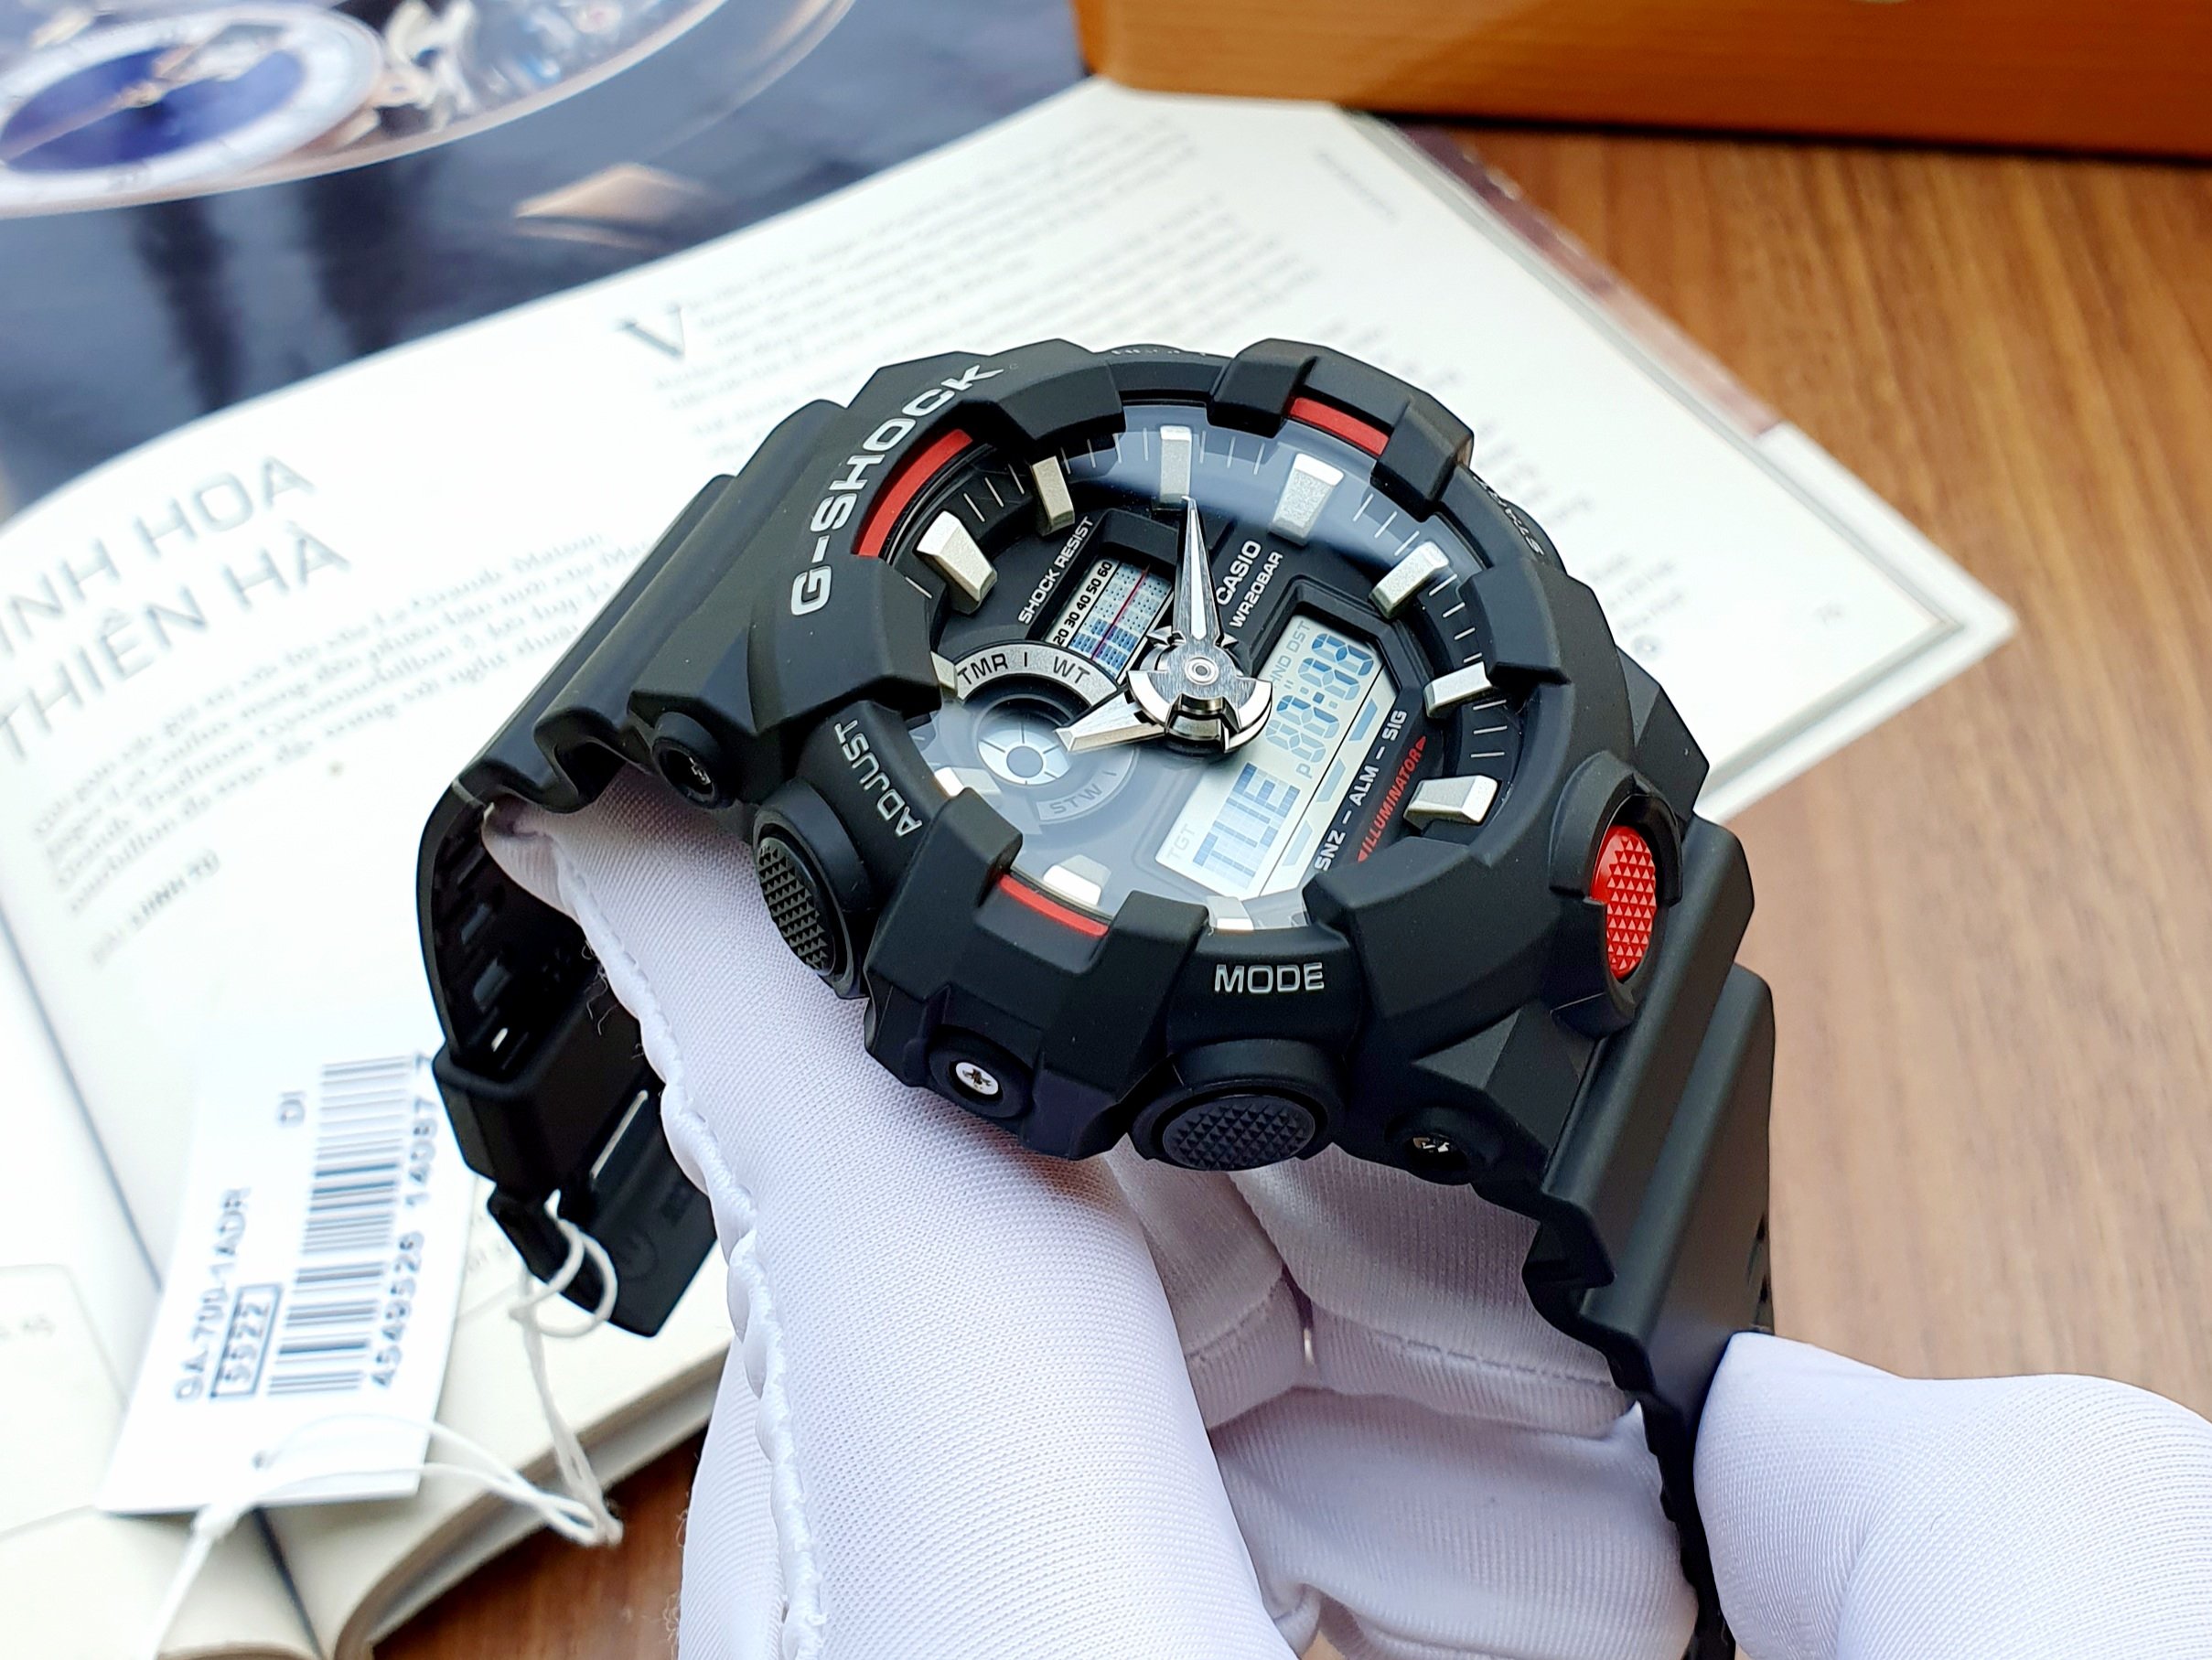 Đồng hồ nam thể thao G-Shock GA-700-1ADR